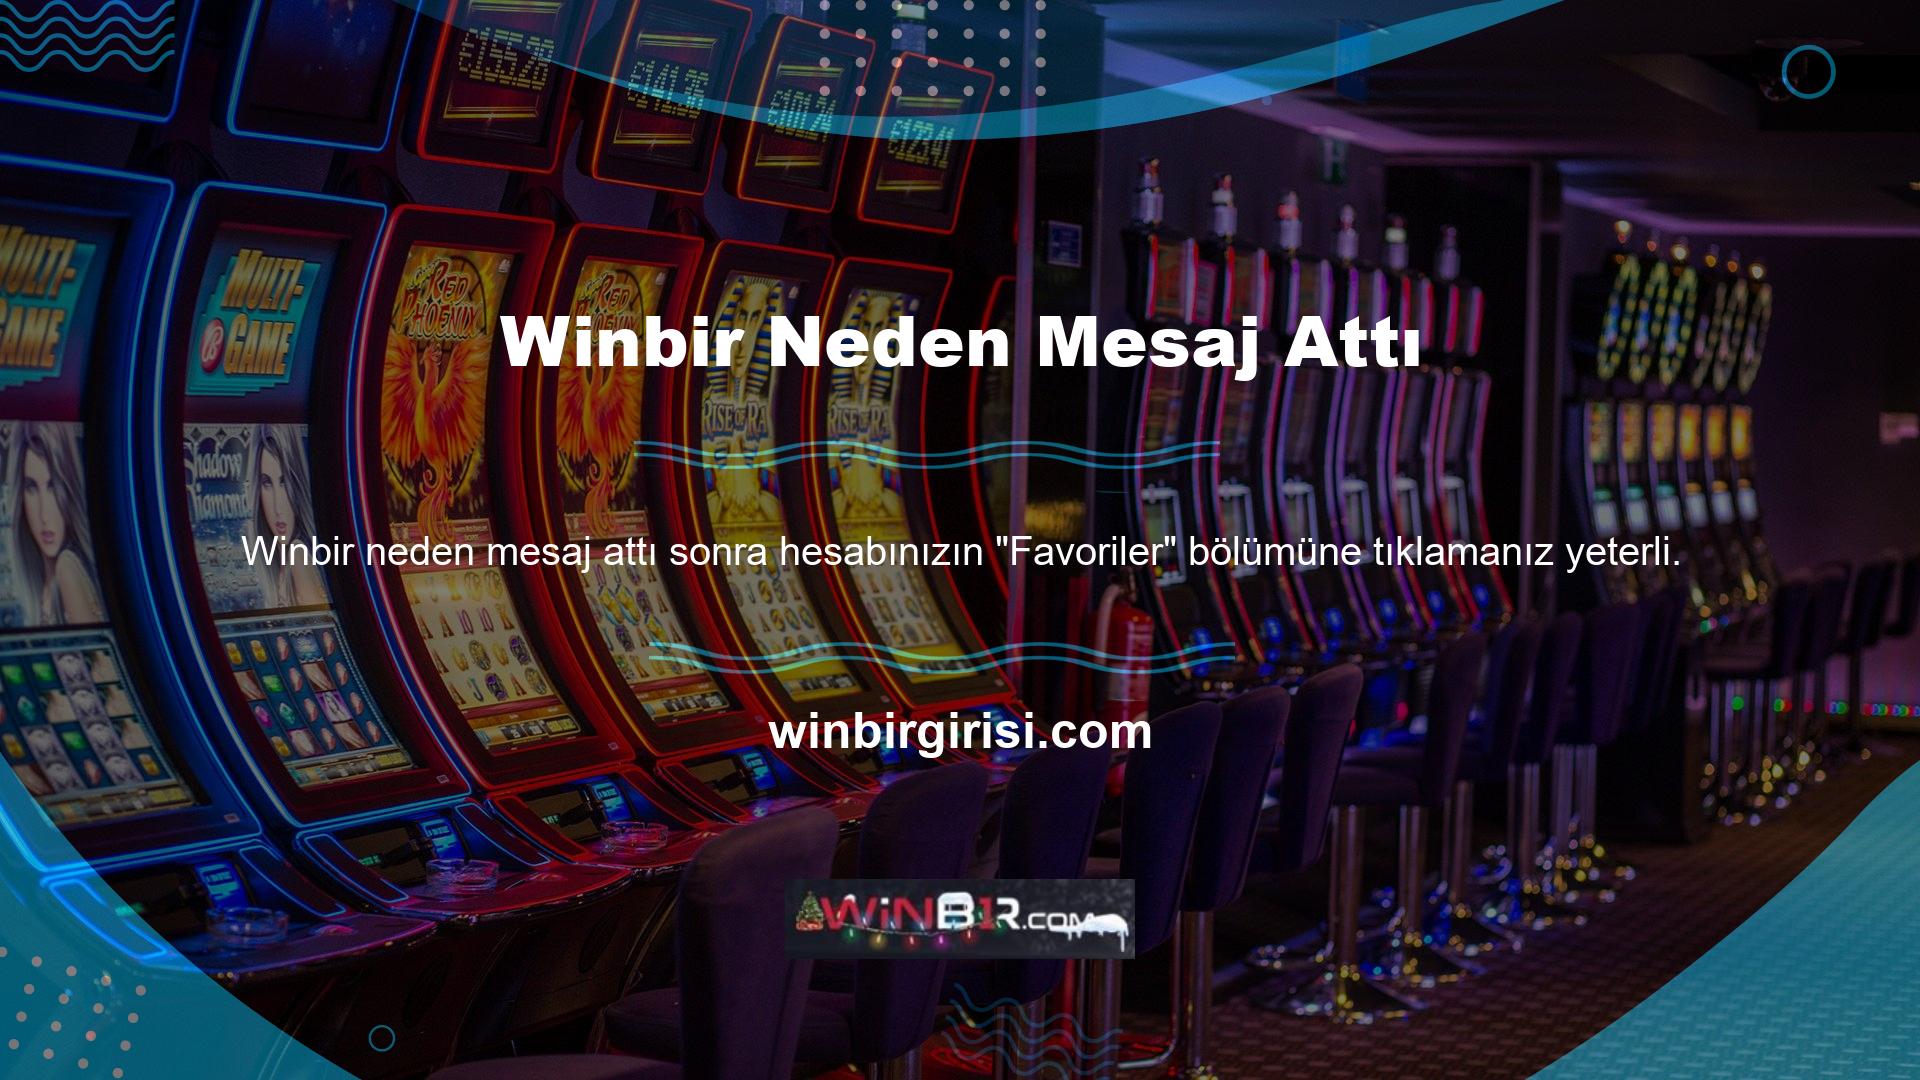 Winbir, uluslararası toplulukta bahis yapmak için gerekli casino sitesi lisansına sahip olup, kullanıcıların güvenli ve hızlı bir şekilde bahis oynamasına olanak sağlamaktadır